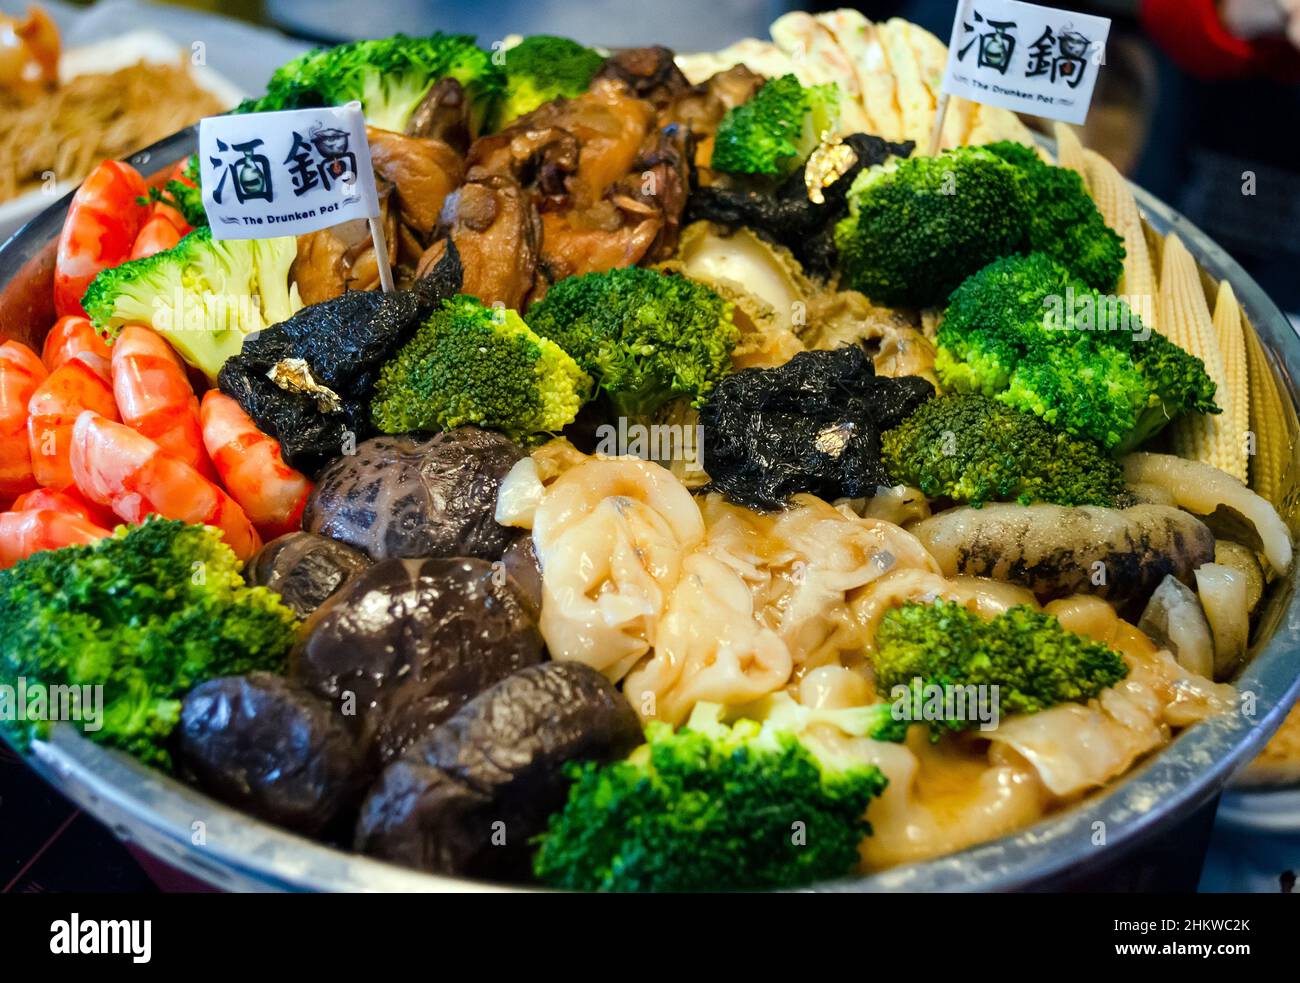 Der berühmte chinesische Neujahrsgott Mixed Drunken Pot, ein traditionelles Essen, das jedes chinesische Neujahr von chinesischen Familien, Hongkong, China, gegessen wird. Stockfoto